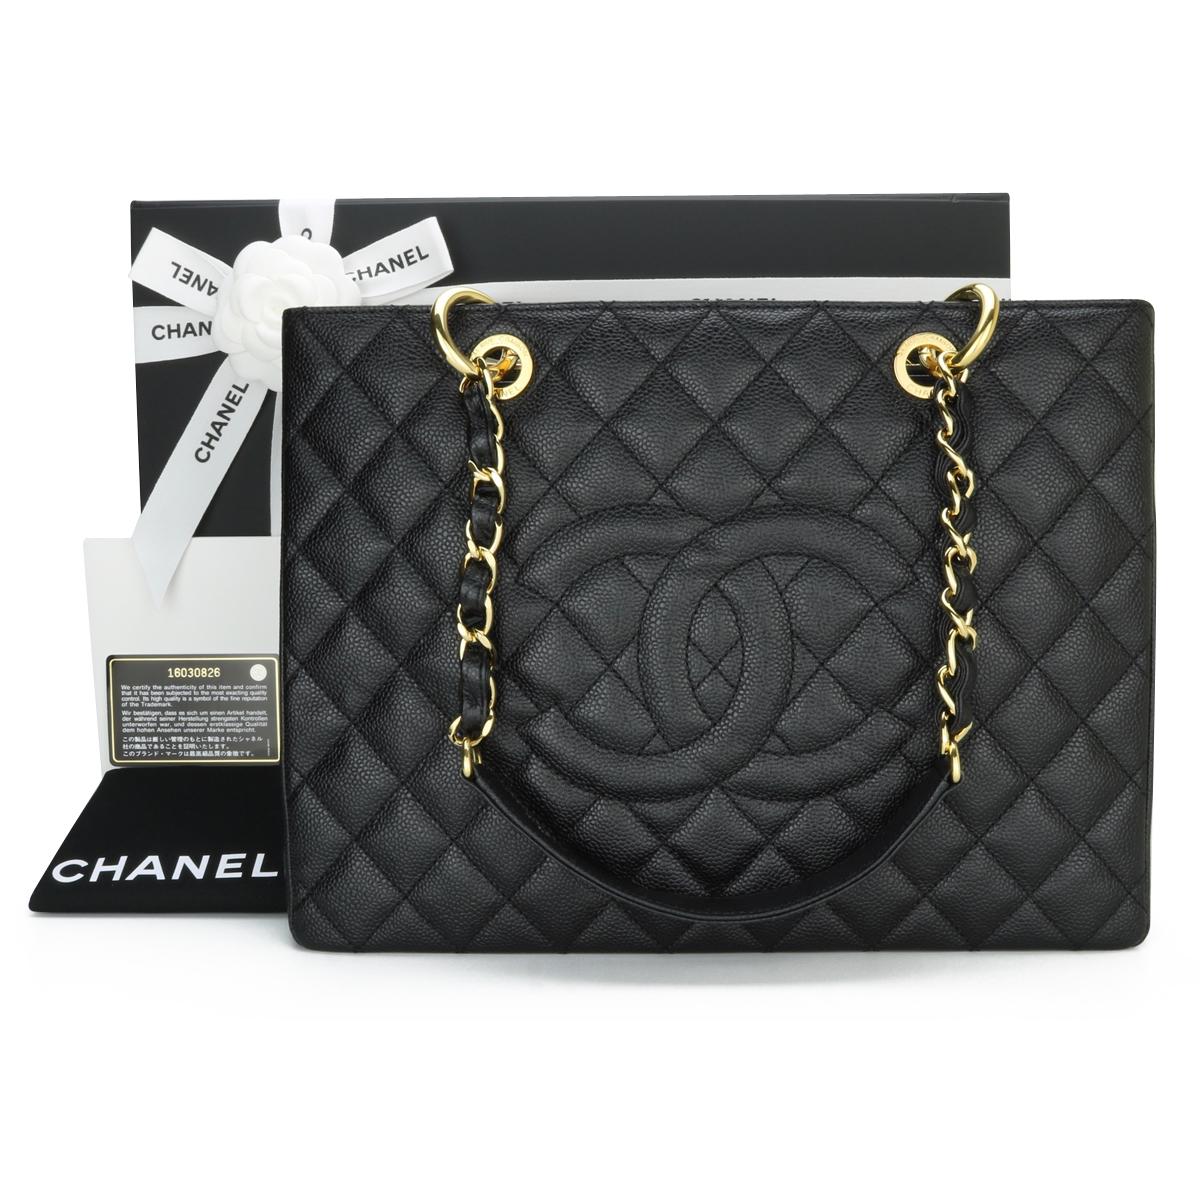 Chanel CHANEL Boy Shanel Bicolor Shoulder Bag Leather Blue x Black